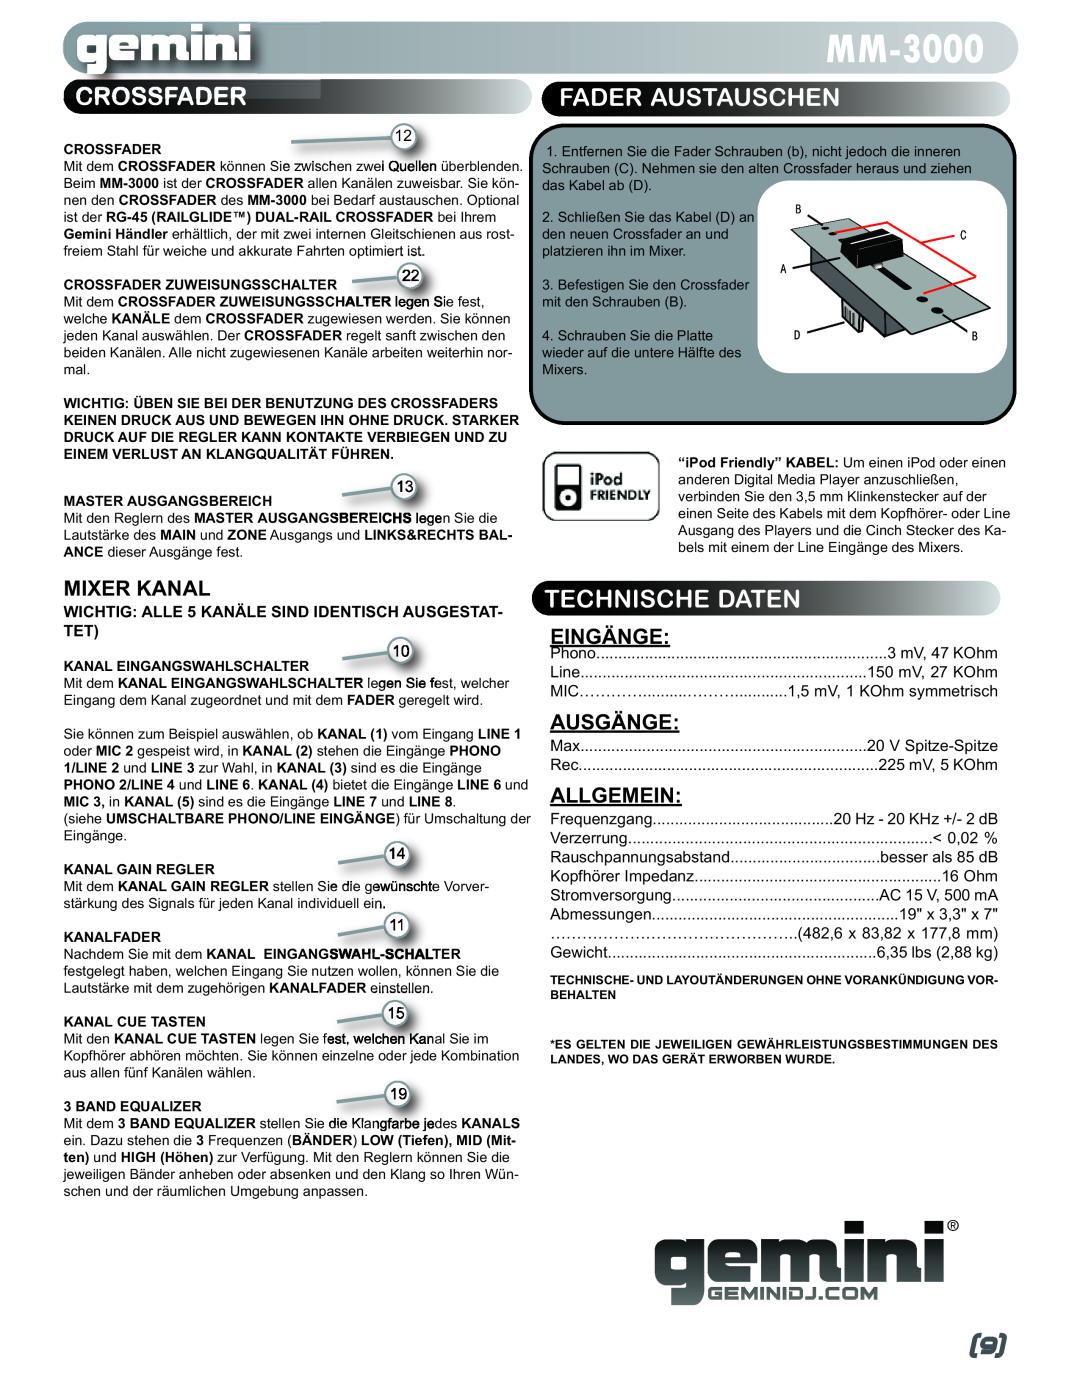 Gemini MM-3000 manual Crossfader, Fader Austauschen, Technische Daten, Mixer Kanal 